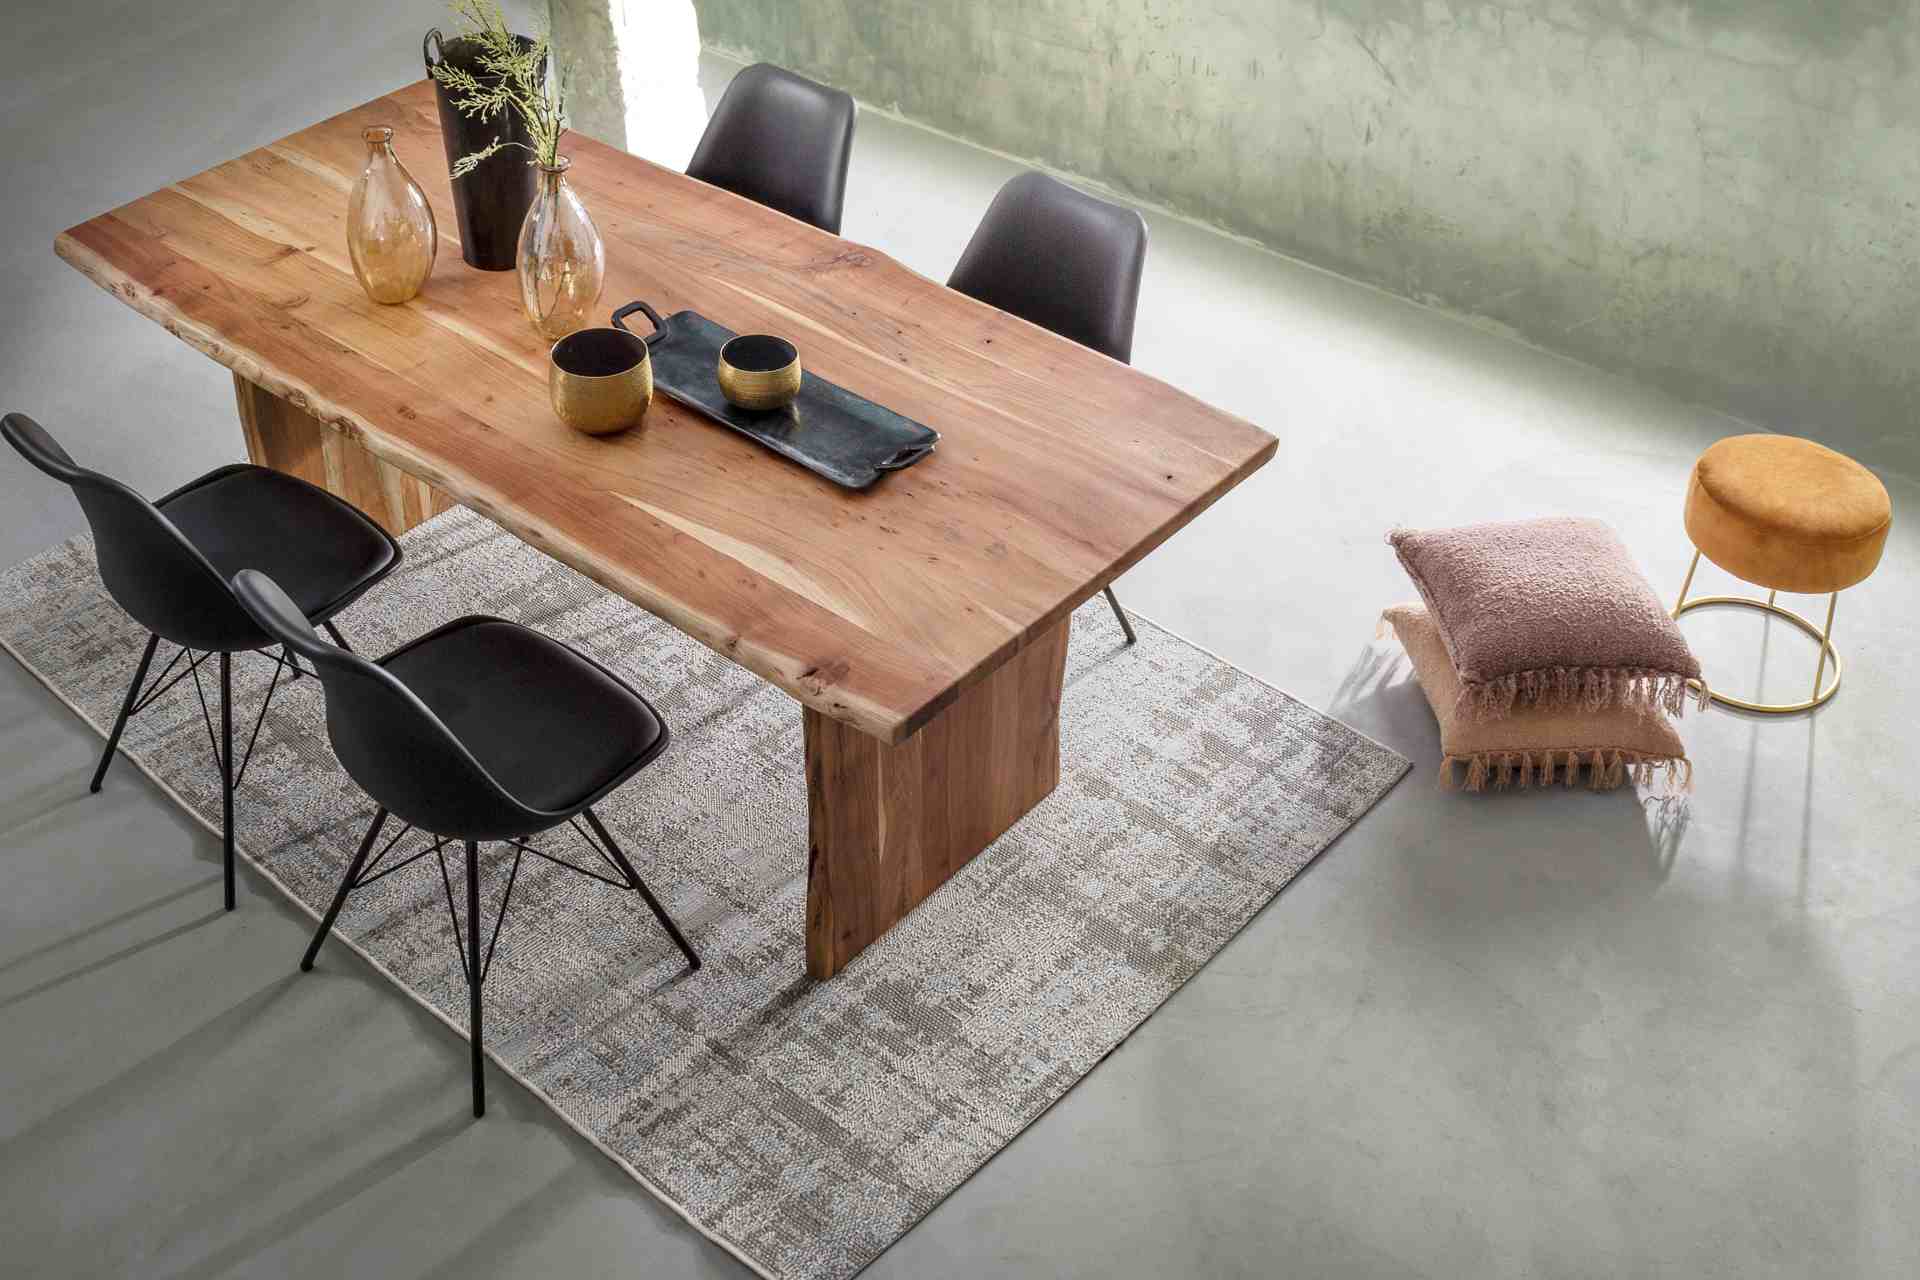 Der Esstisch Eneas überzeugt mit seinem moderndem Design. Gefertigt wurde er aus Akazienholz, welches einen natürlichen Farbton besitzt. Das Gestell des Tisches ist auch aus Akazienholz und ist in eine natürliche Farbe. Der Tisch besitzt eine Breite von 2